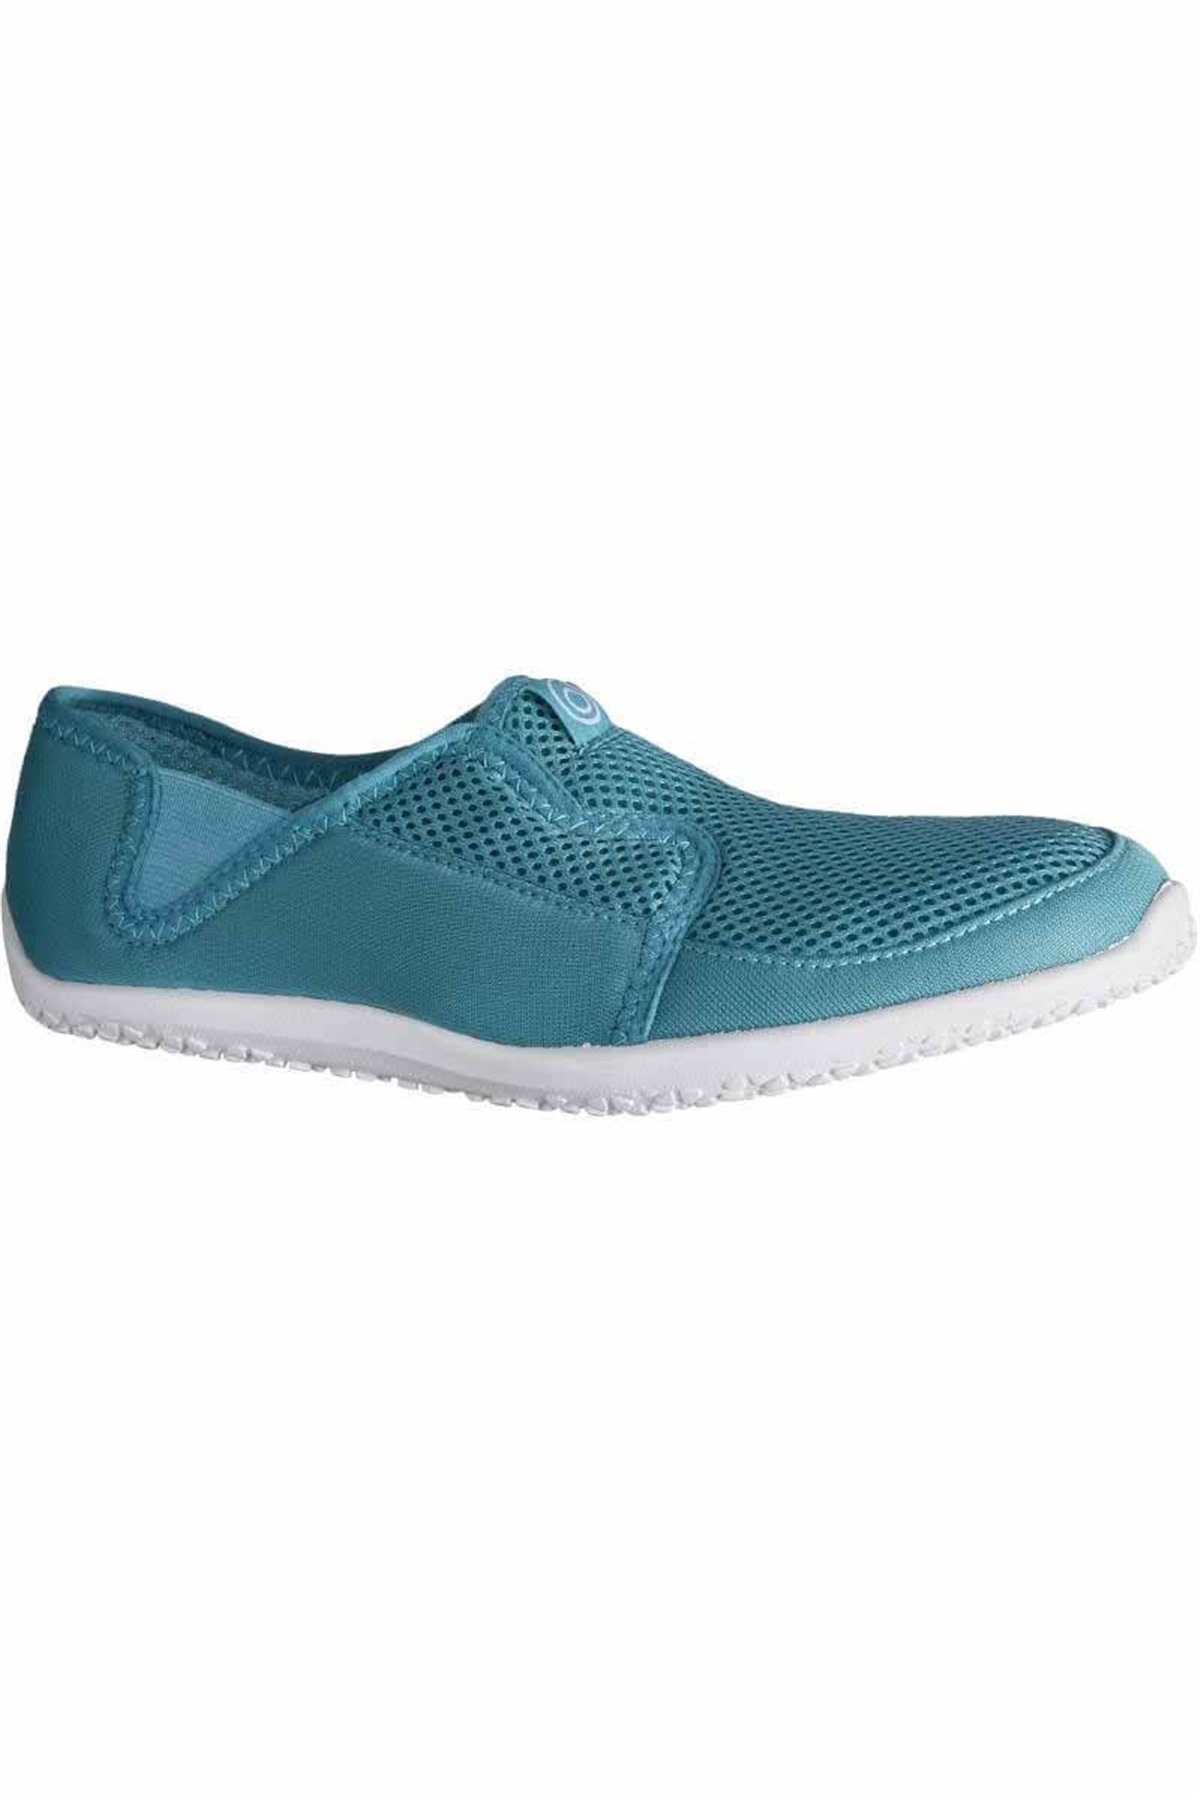 Deniz Ayakkabısı Aqua Shoes 8484949 - Mavi